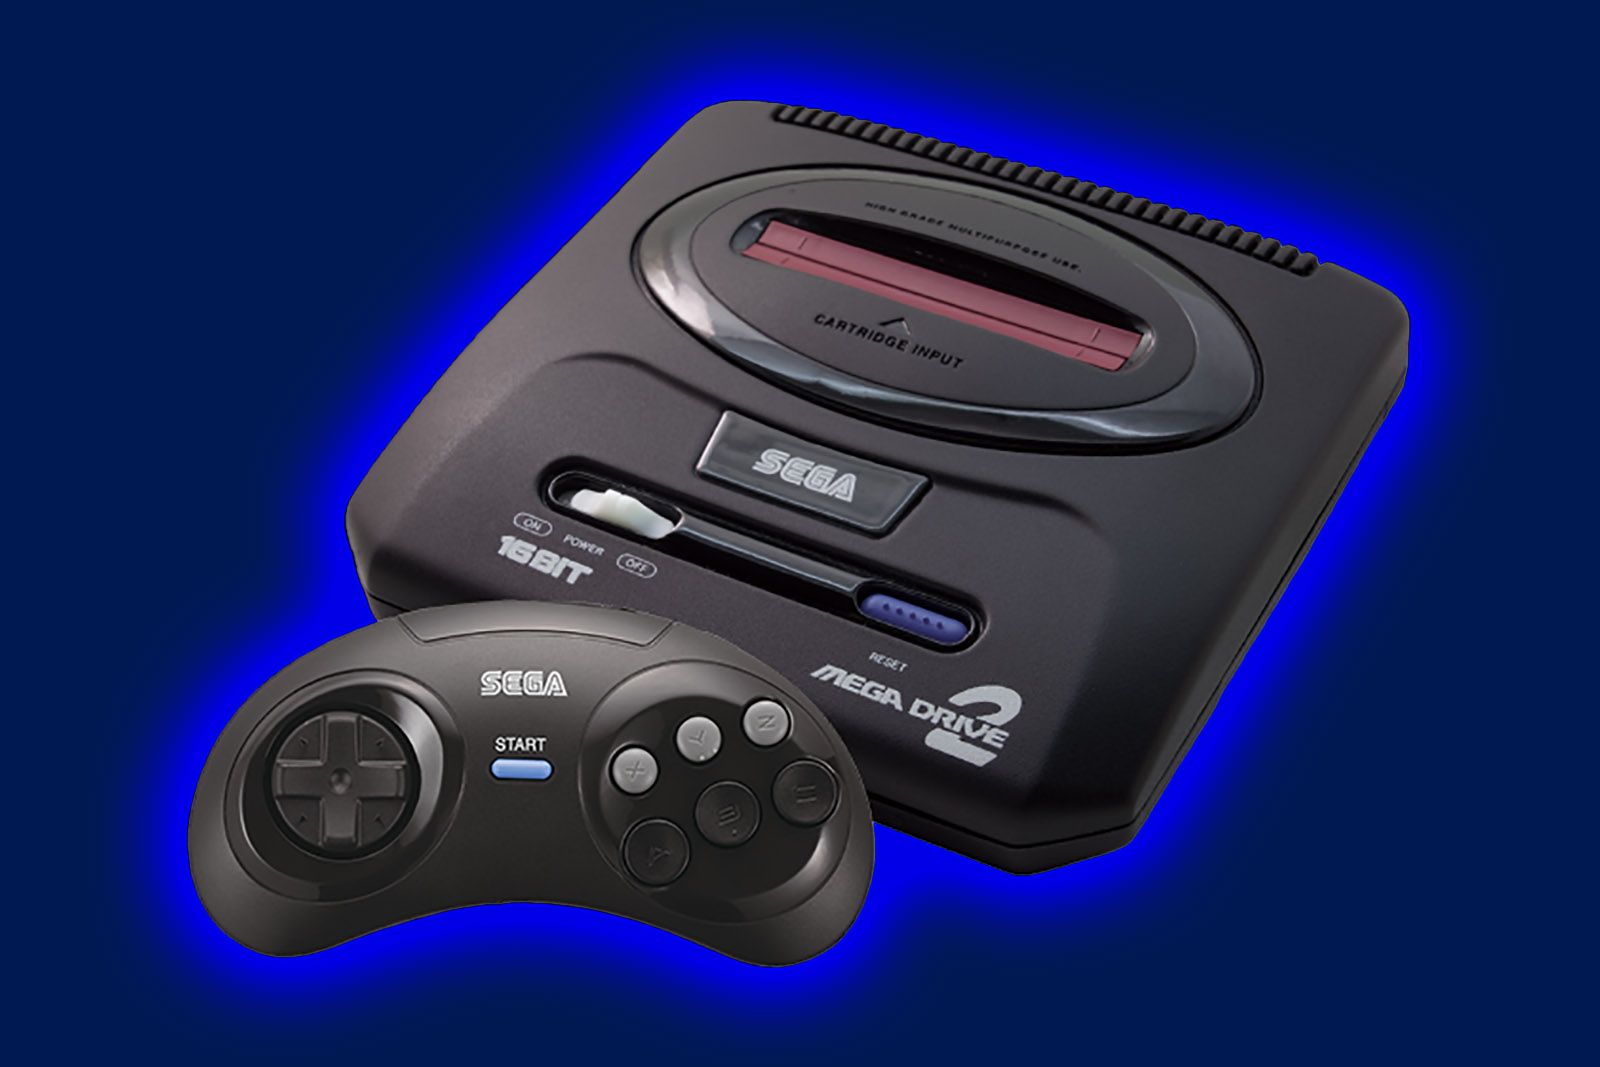 Fecha de lanzamiento, precio y lista de juegos de Sega Mega Drive